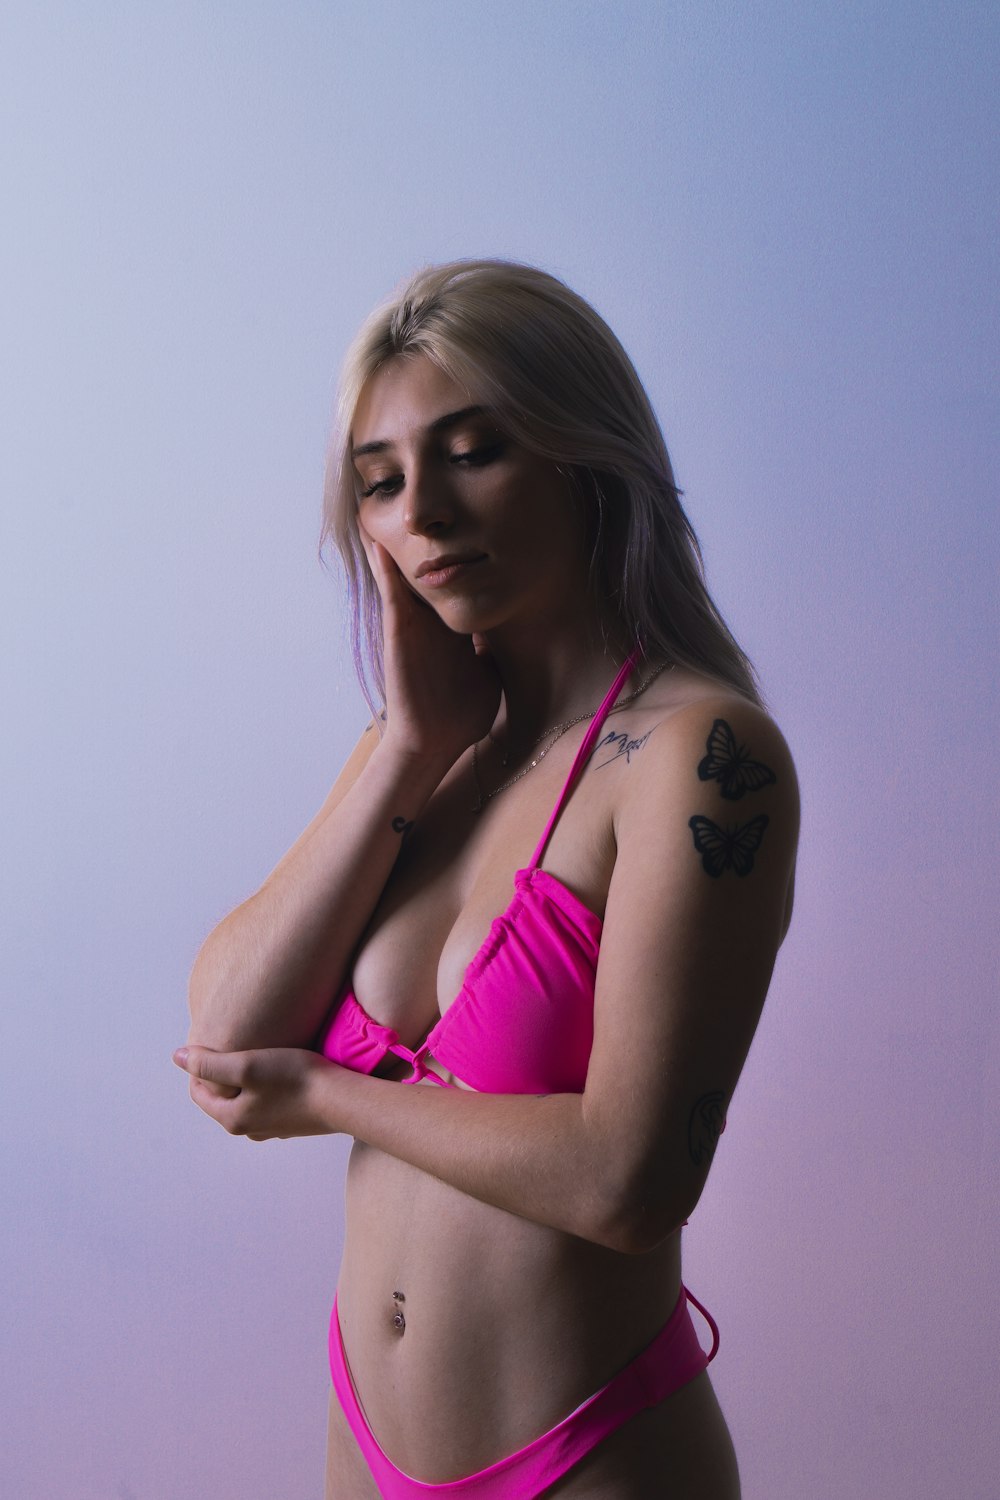 woman in pink bikini top